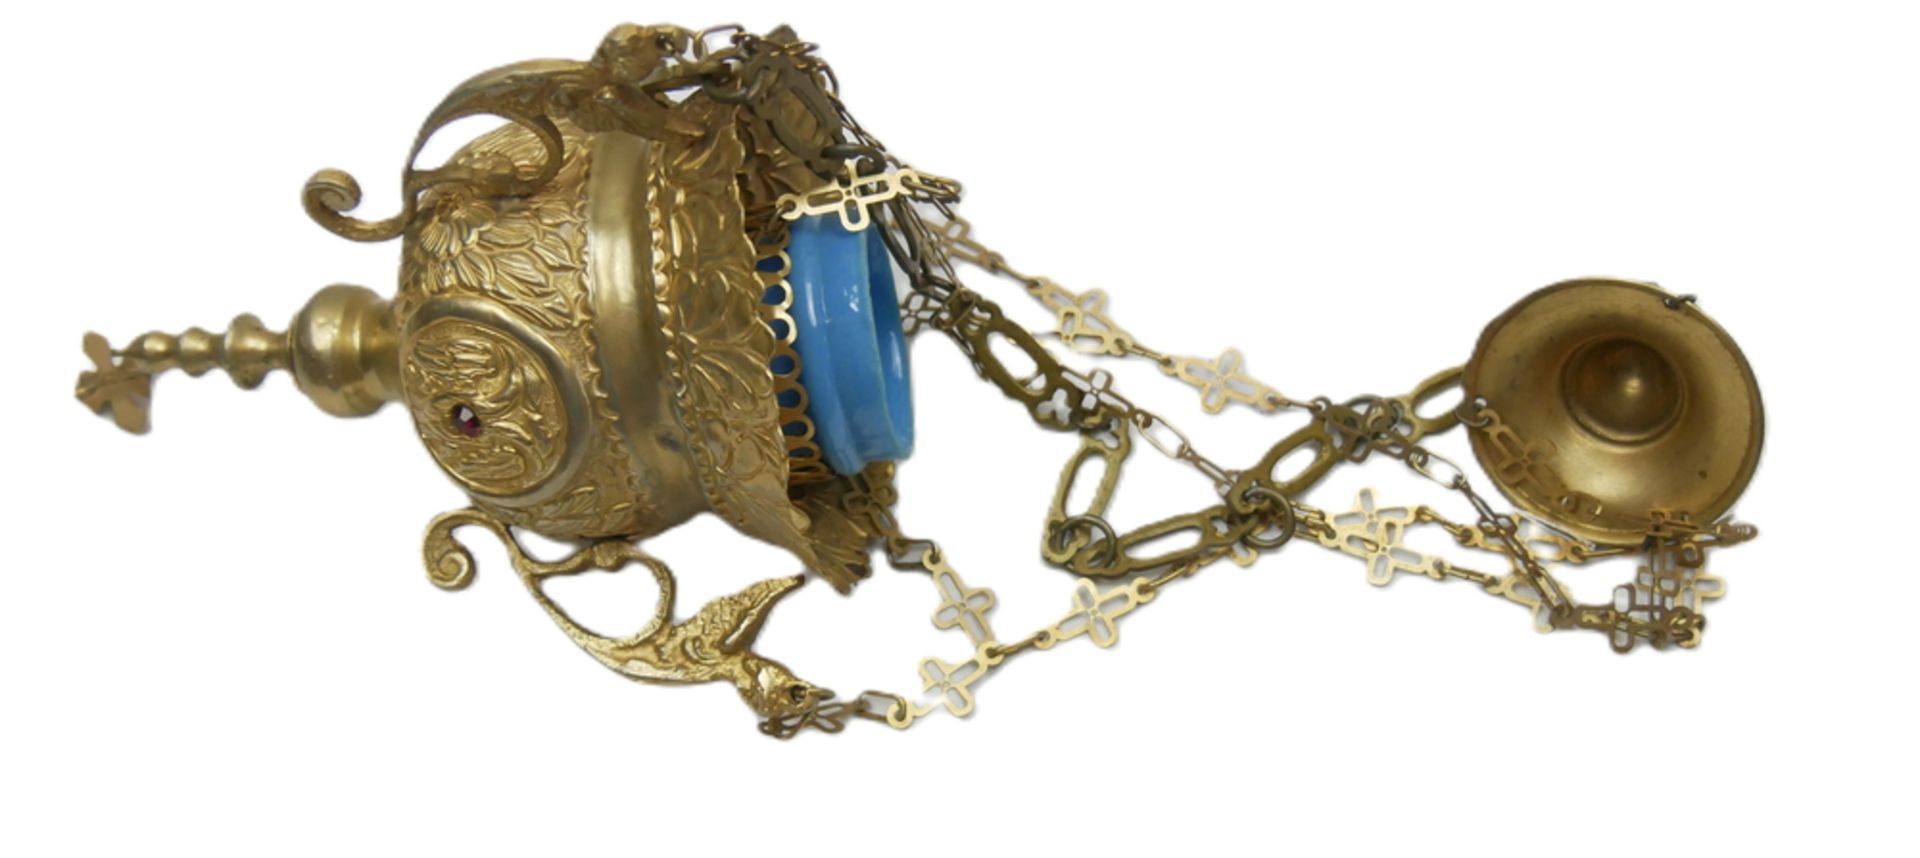 Weihrauch Ampel, Messing Gold poliert, Höhe ca. 18 cm mit blauem Glas und Kette. Verziert mit Engel,